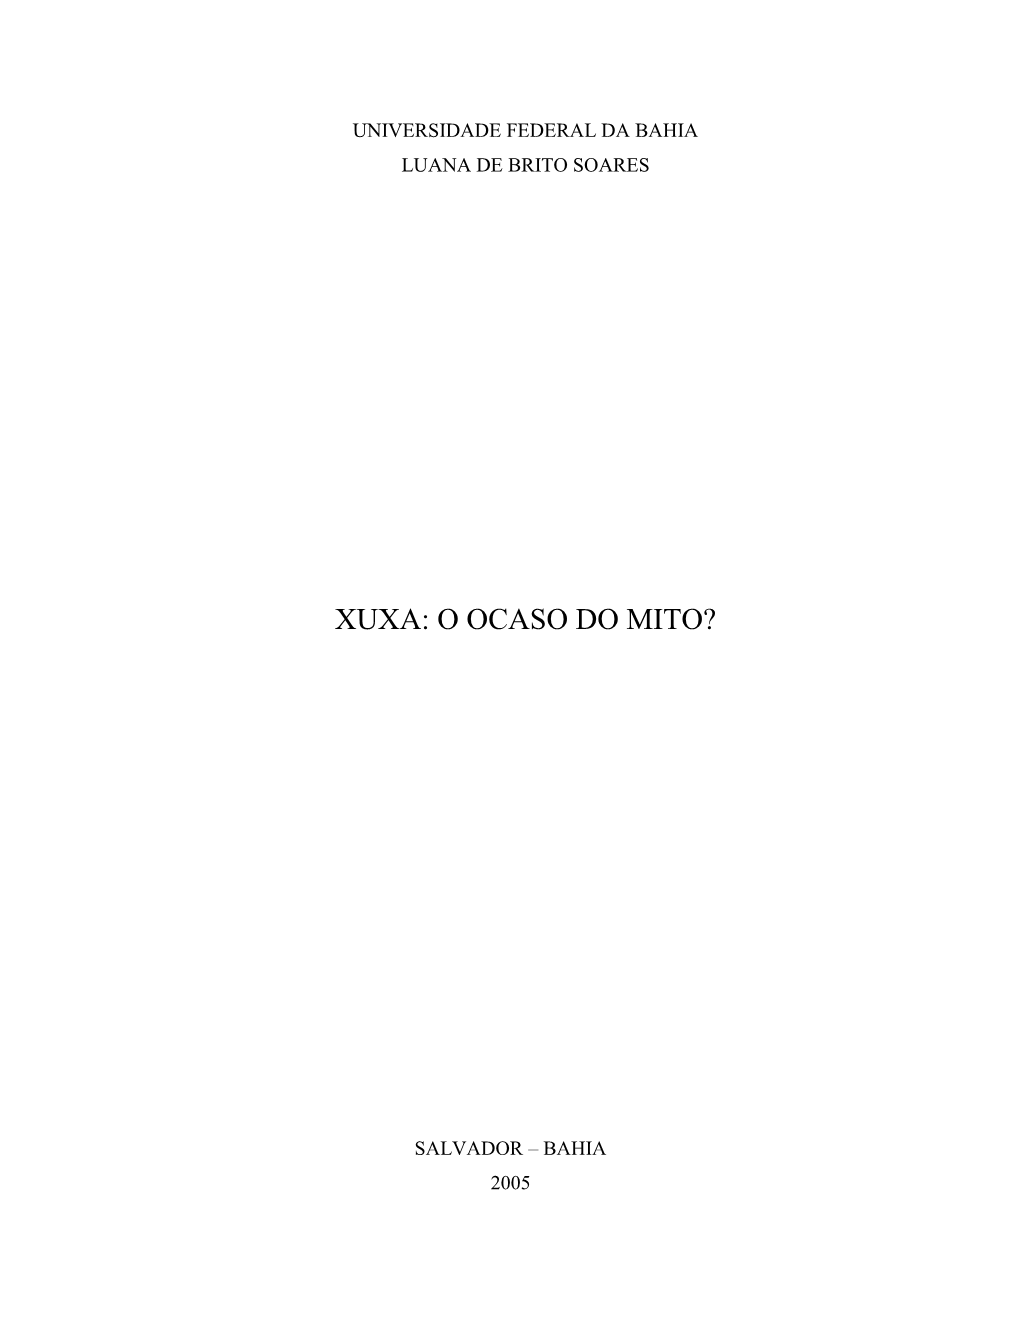 Xuxa: O Ocaso Do Mito?